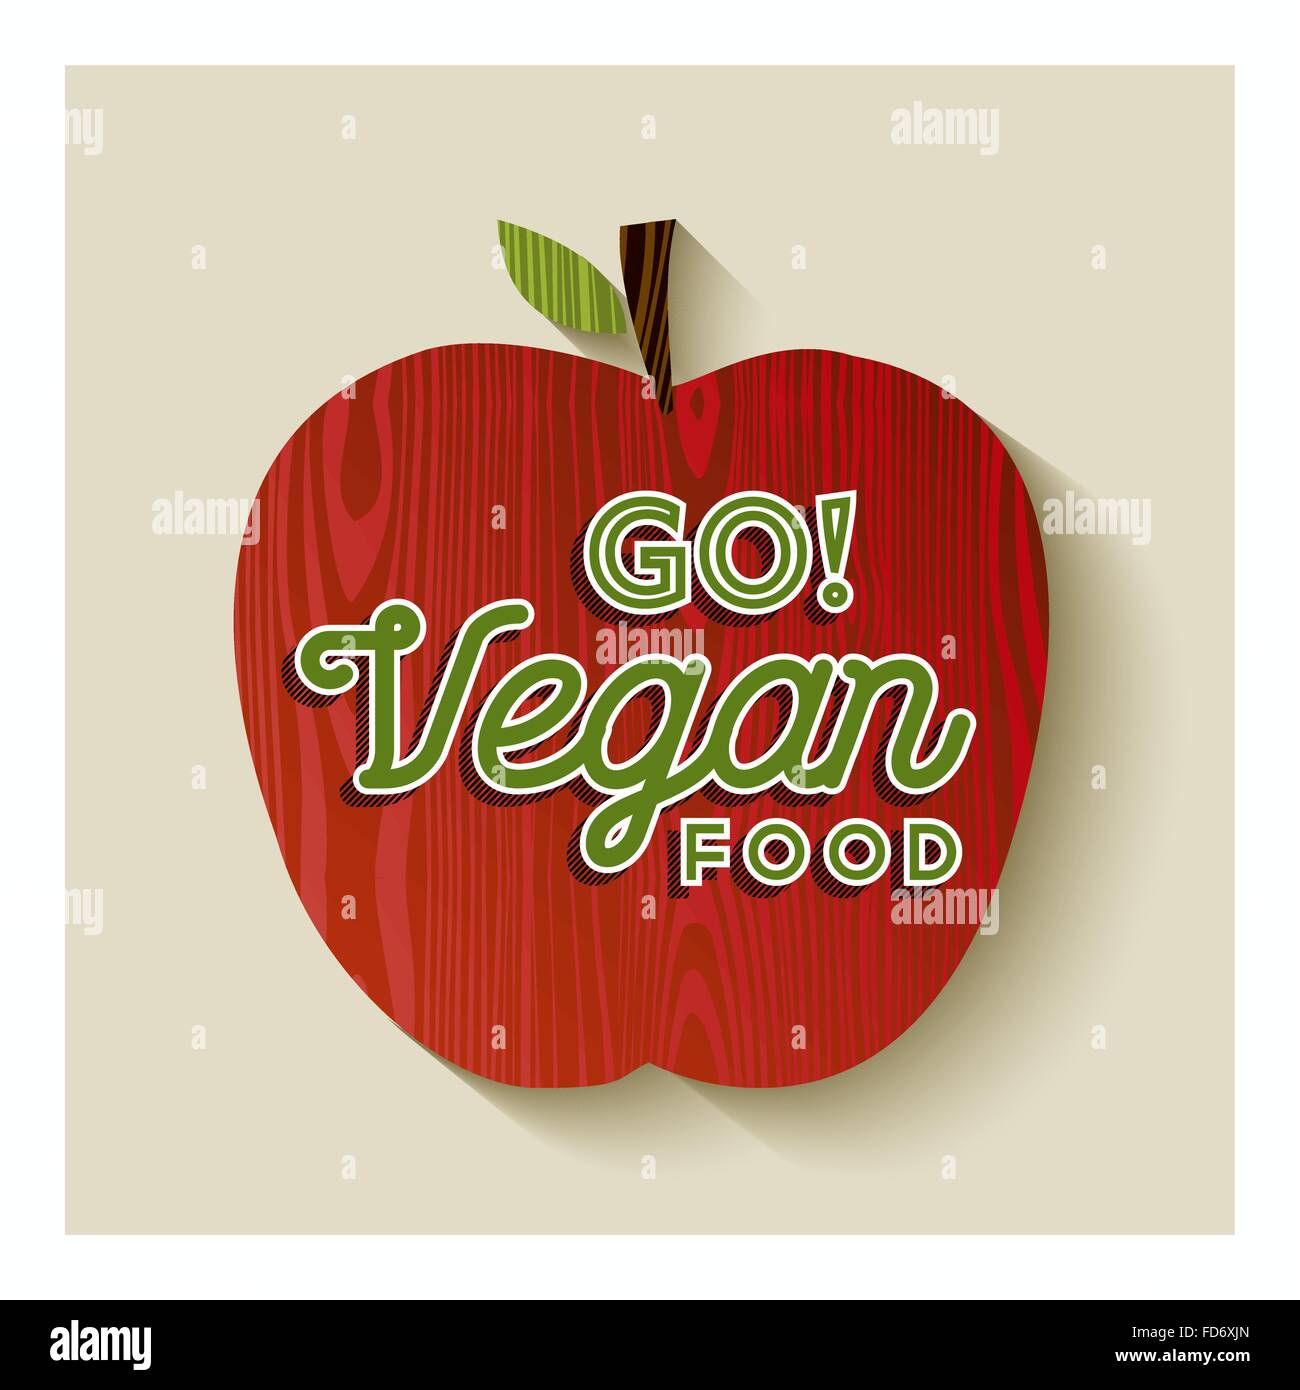 Pomme rouge sur la texture en bois avec Go vegan food concept illustration de texte. Vecteur EPS10. Illustration de Vecteur